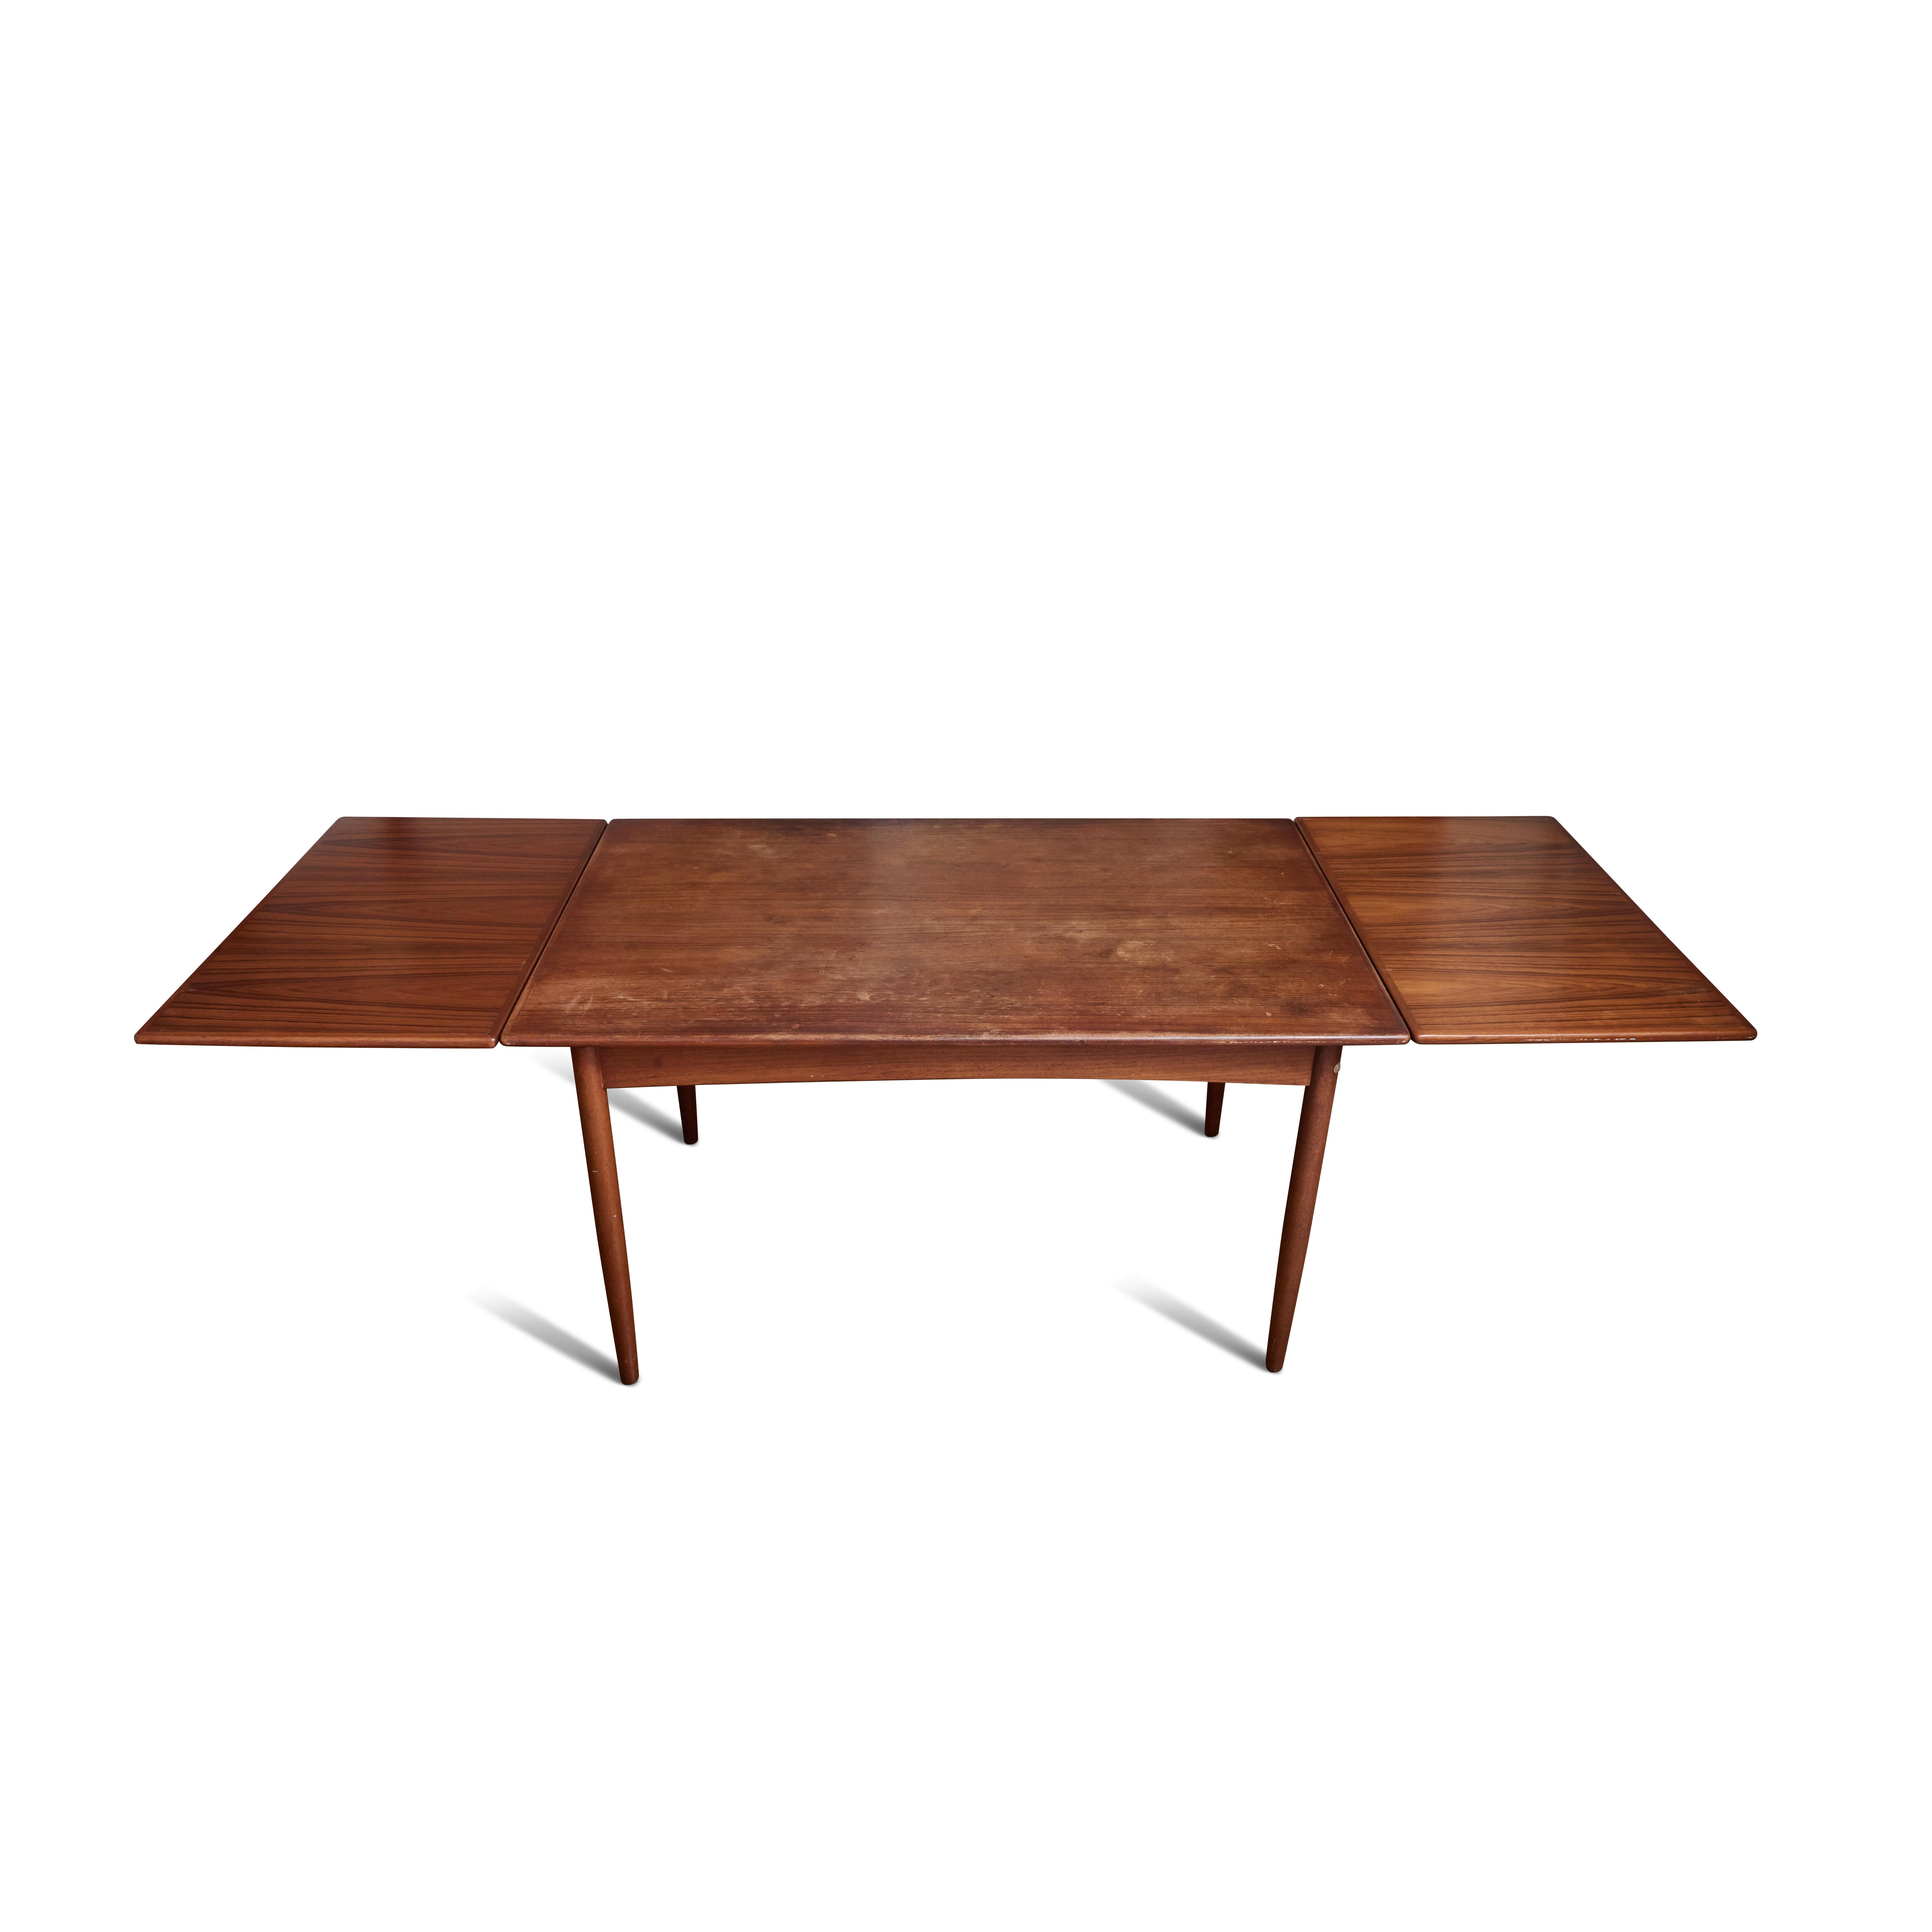 Hans J. Wegner AT-316 Table de salle à manger à rallonge en teck des années 1960. Une table extensible incroyablement raffinée et intelligemment conçue par le légendaire Wegner pour Andreas Tuck. Exécutée en bois de teck massif avec 2 coulisses de